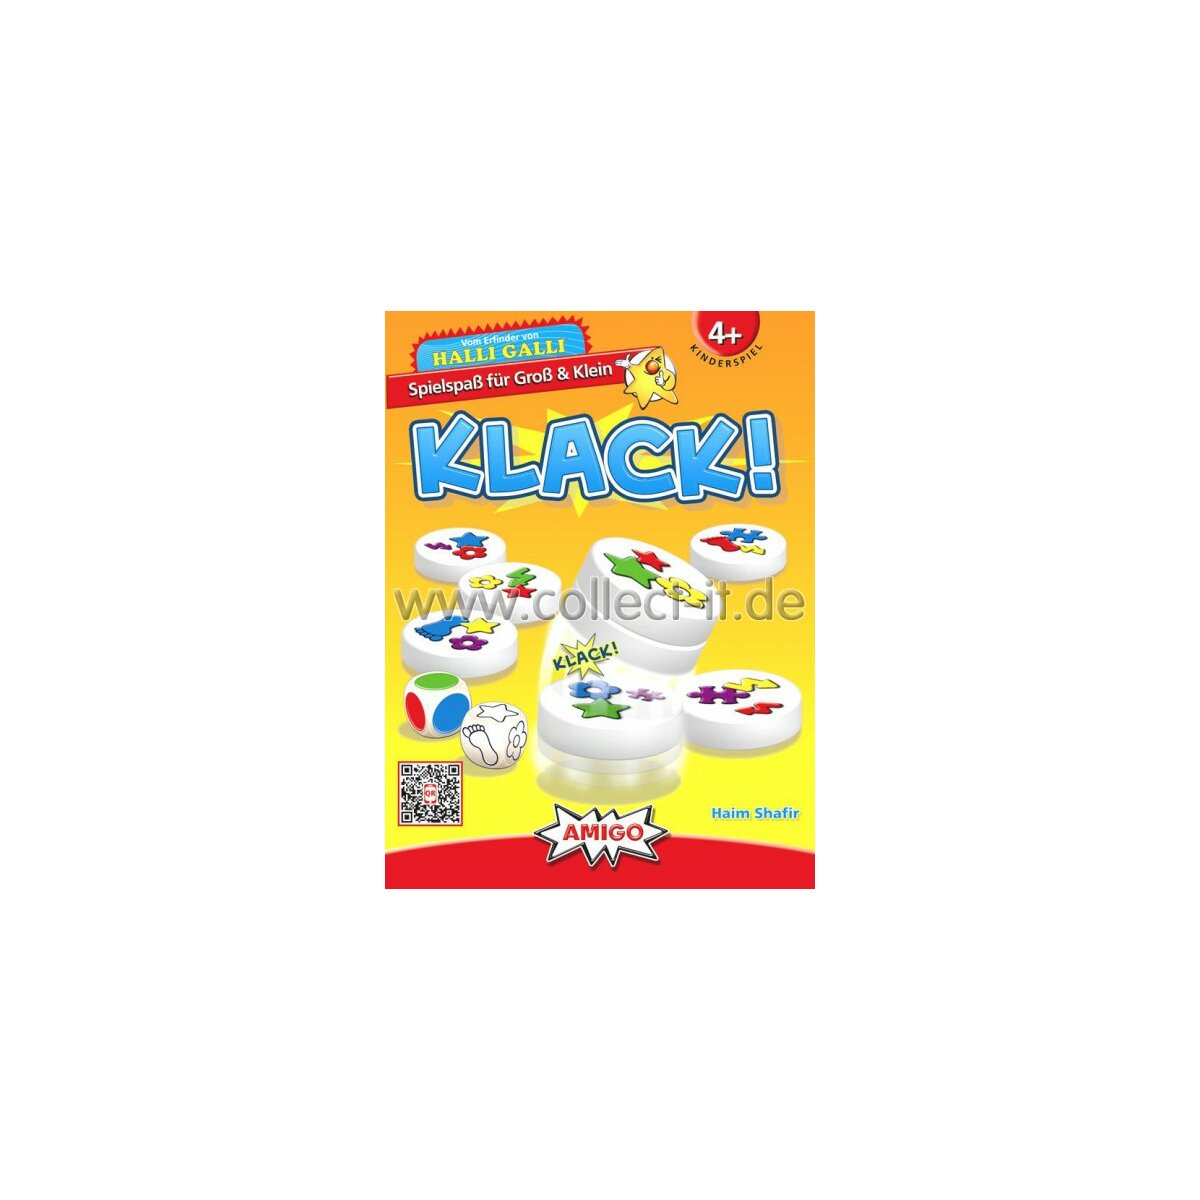 Amigo Kinderspiele 02765 - Clack!, 15,03 €